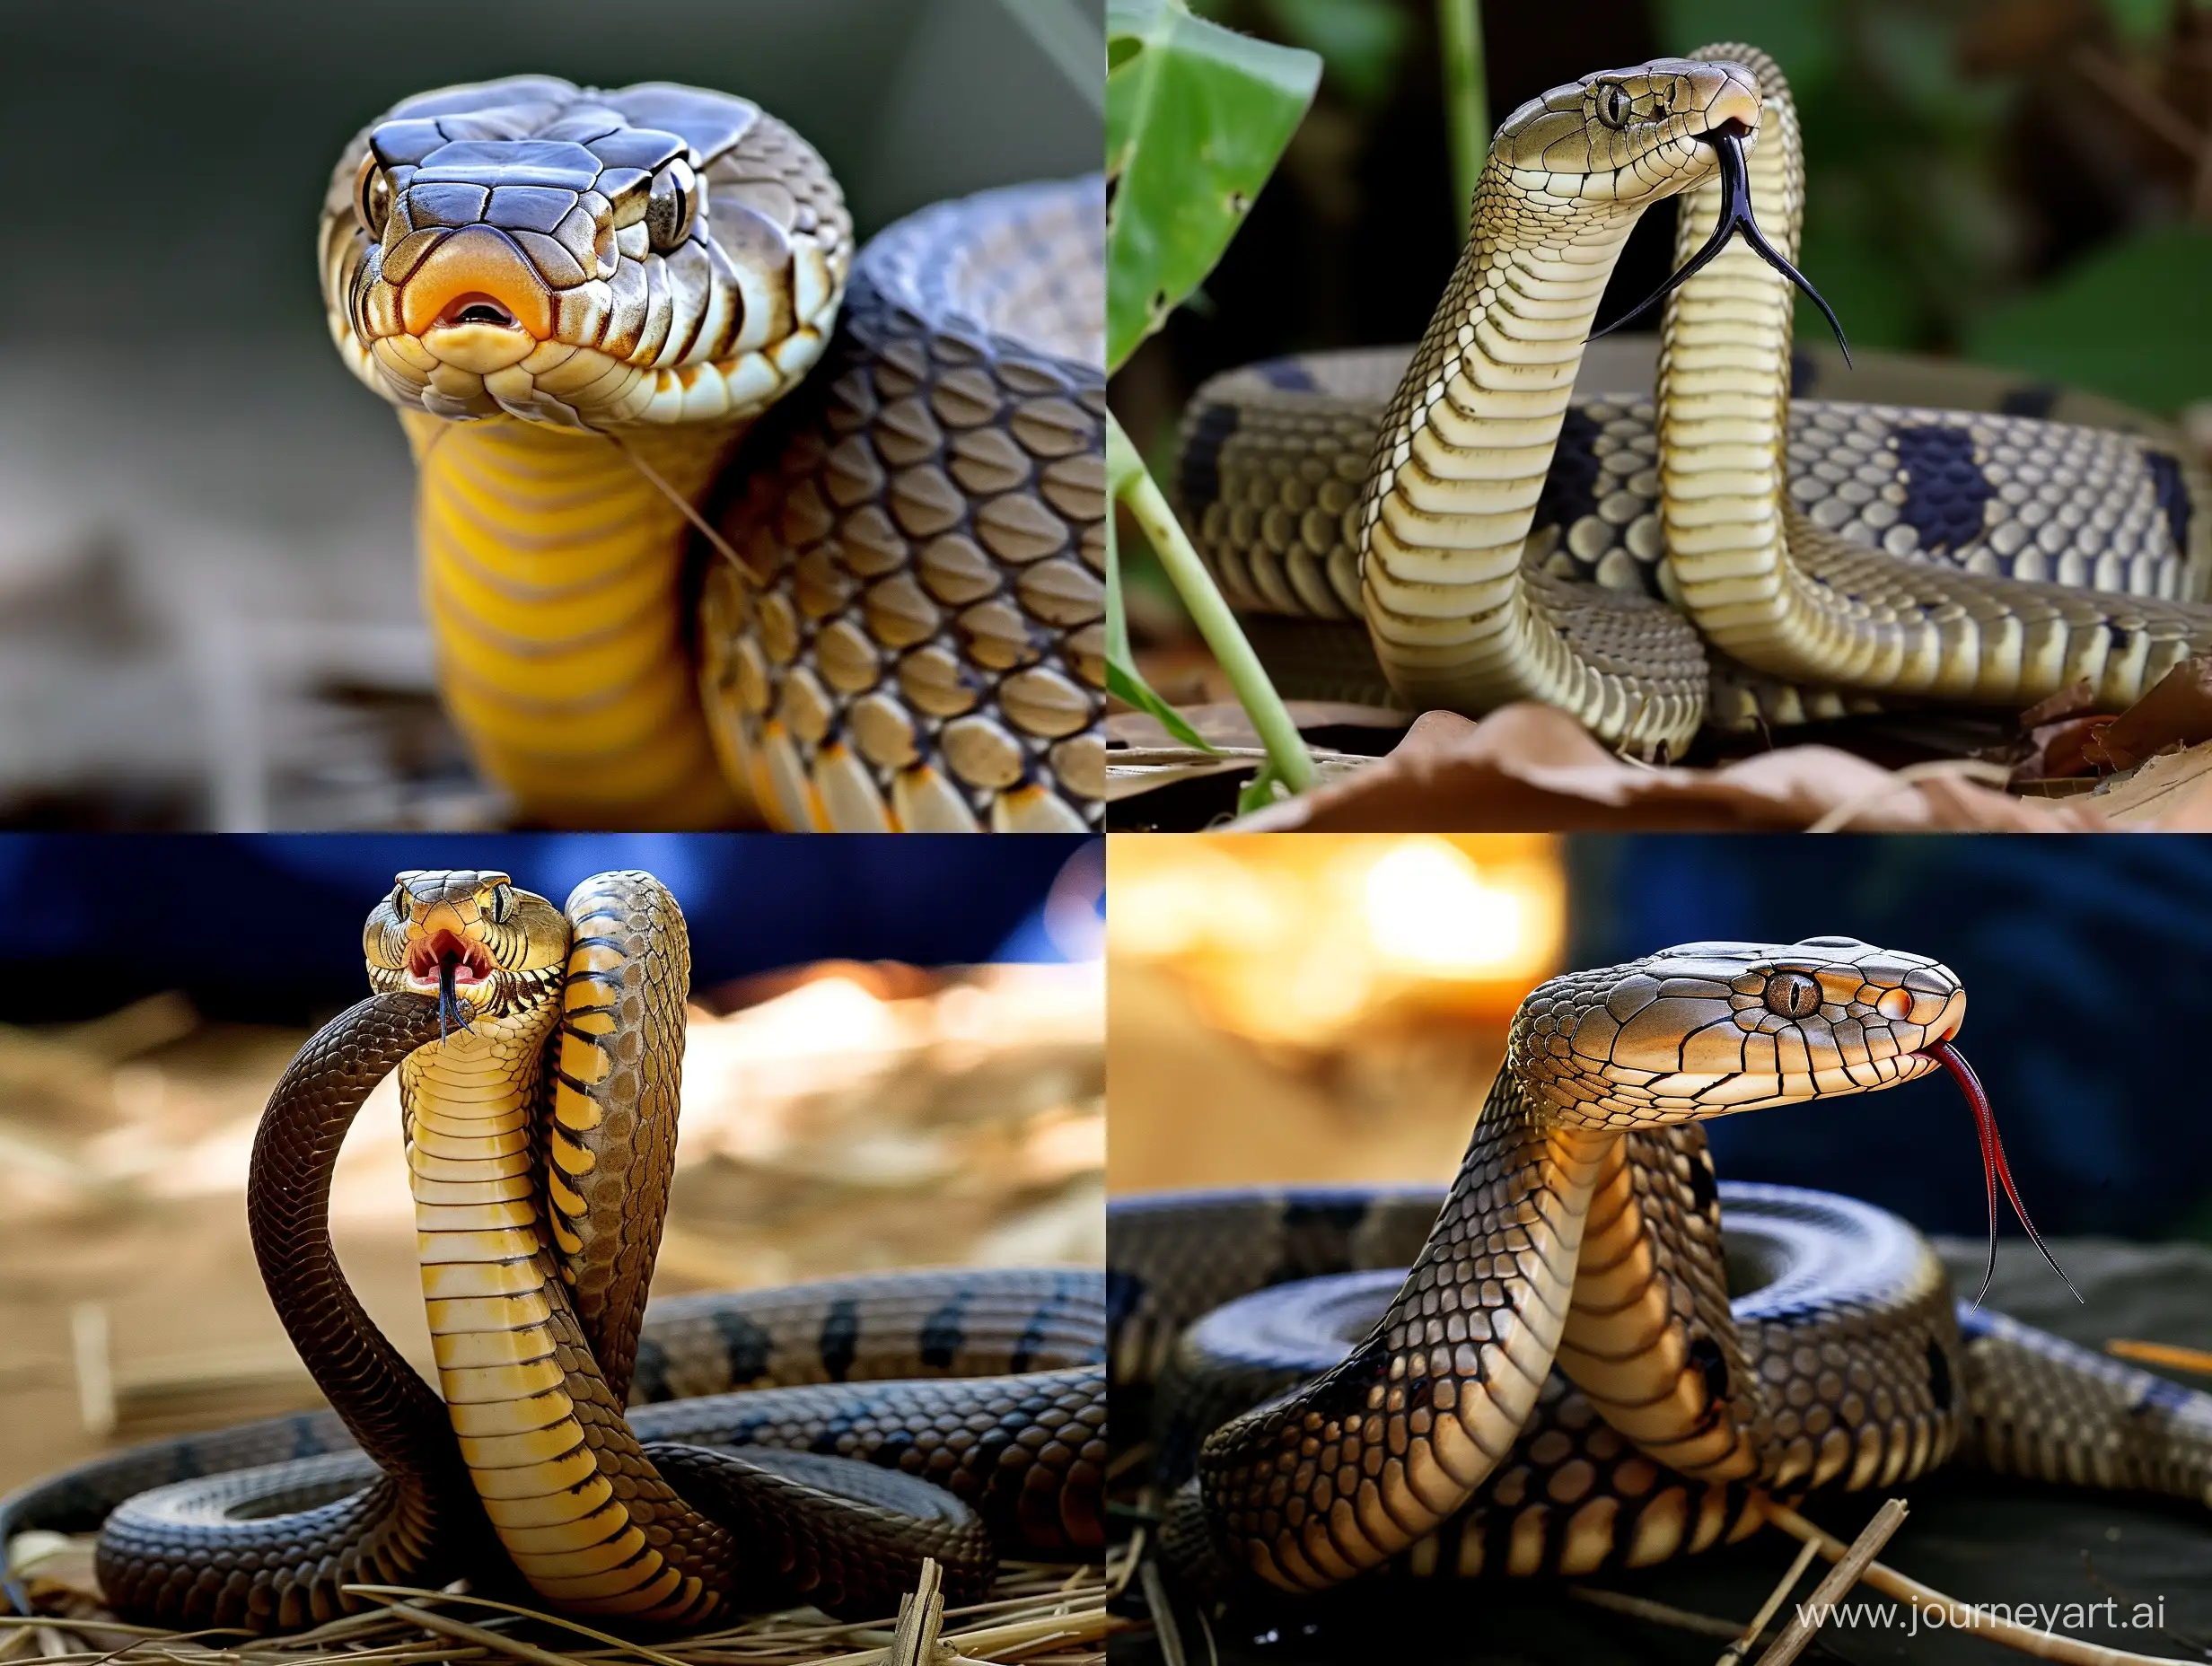 Real cobra snake